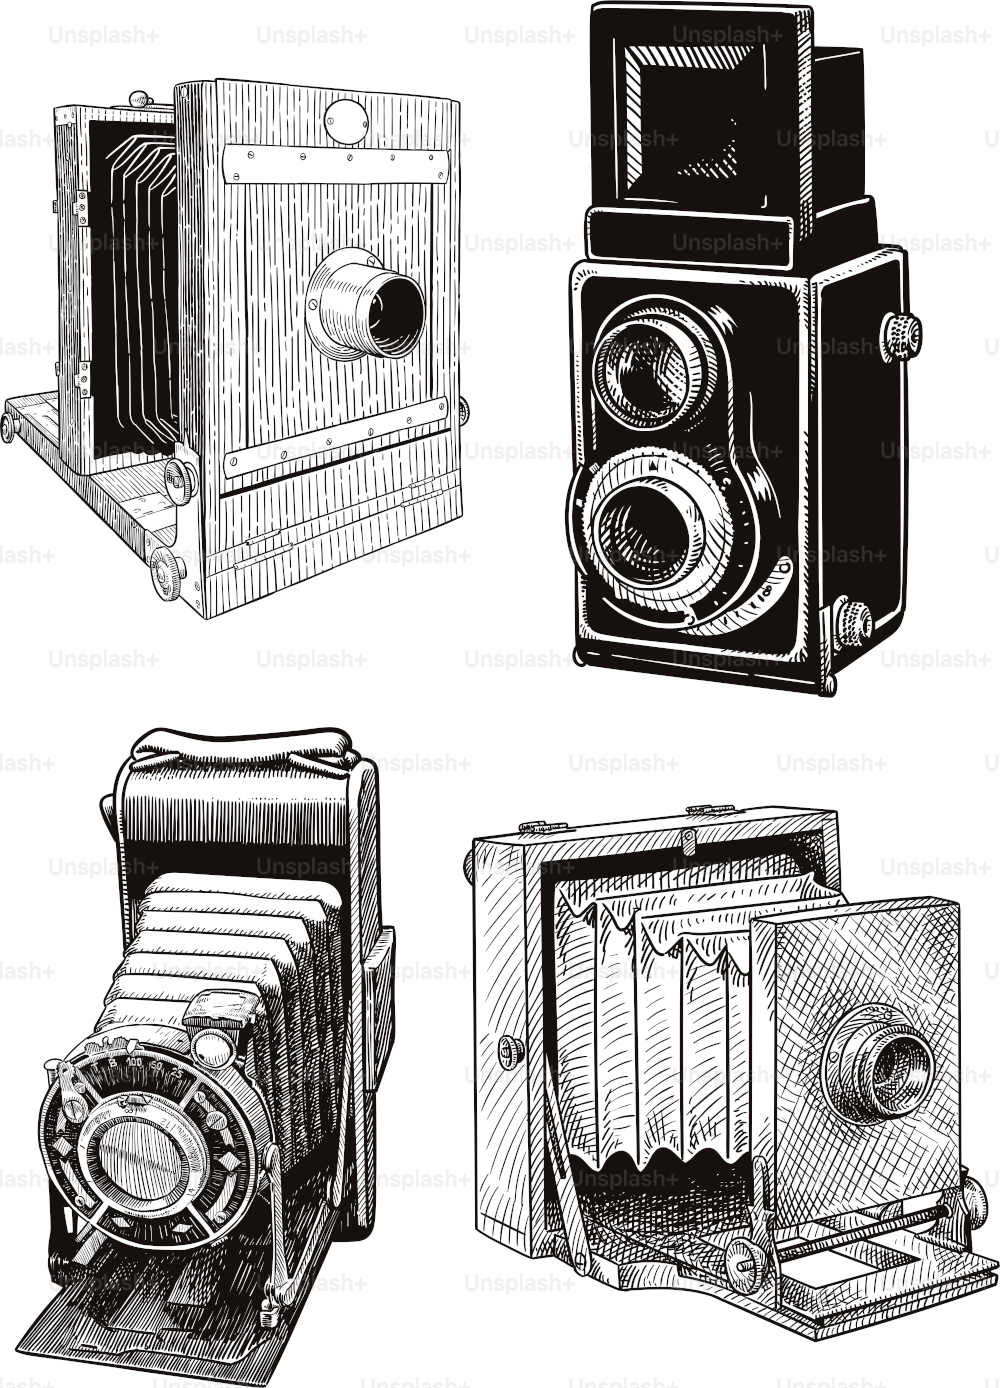 4台のビンテージカメラのオールドスタイルのイラスト